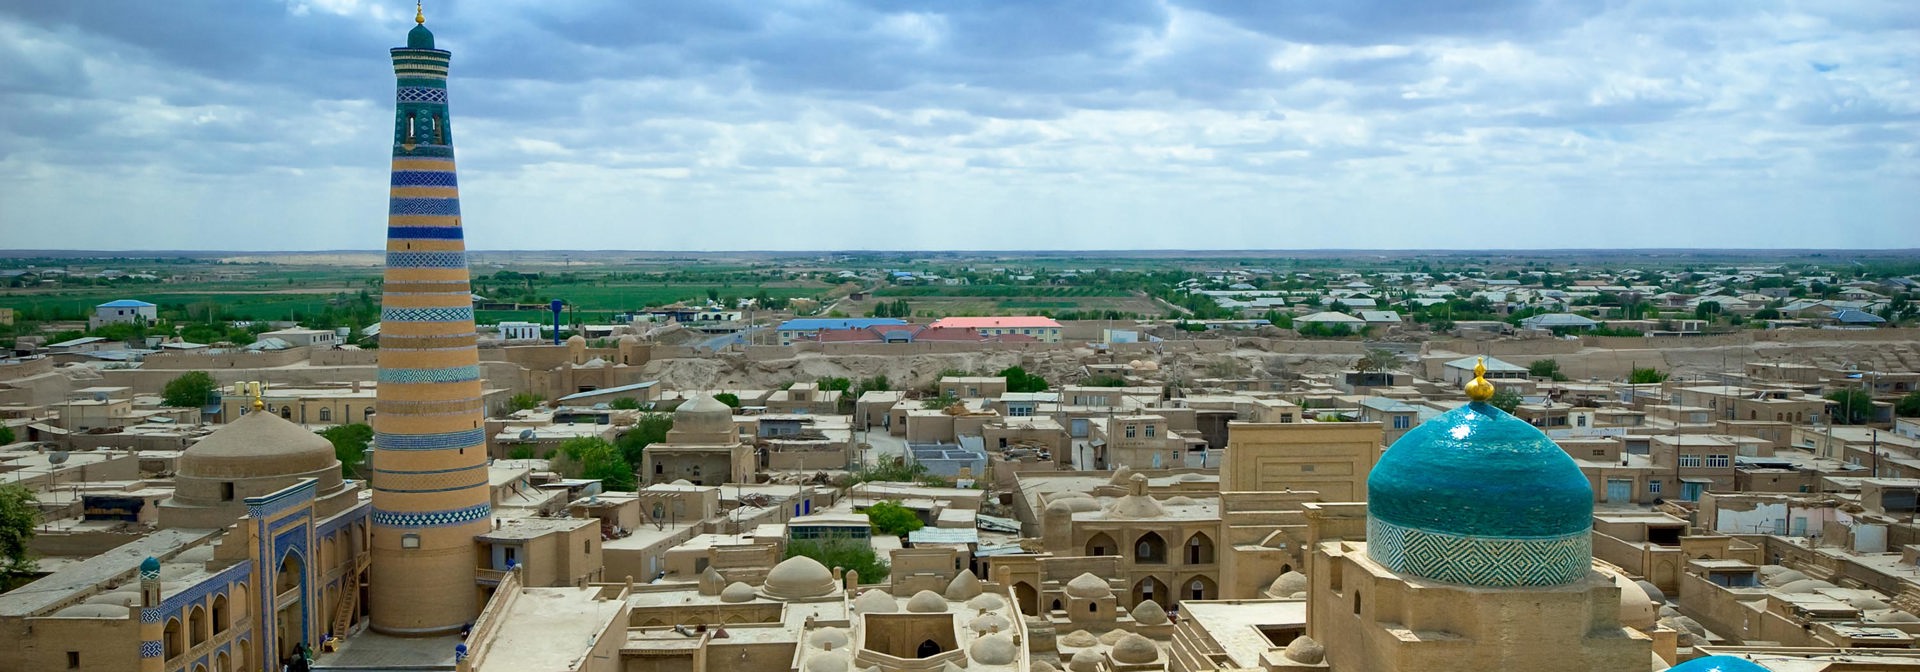 uzbekistan - khiva_minaret_02